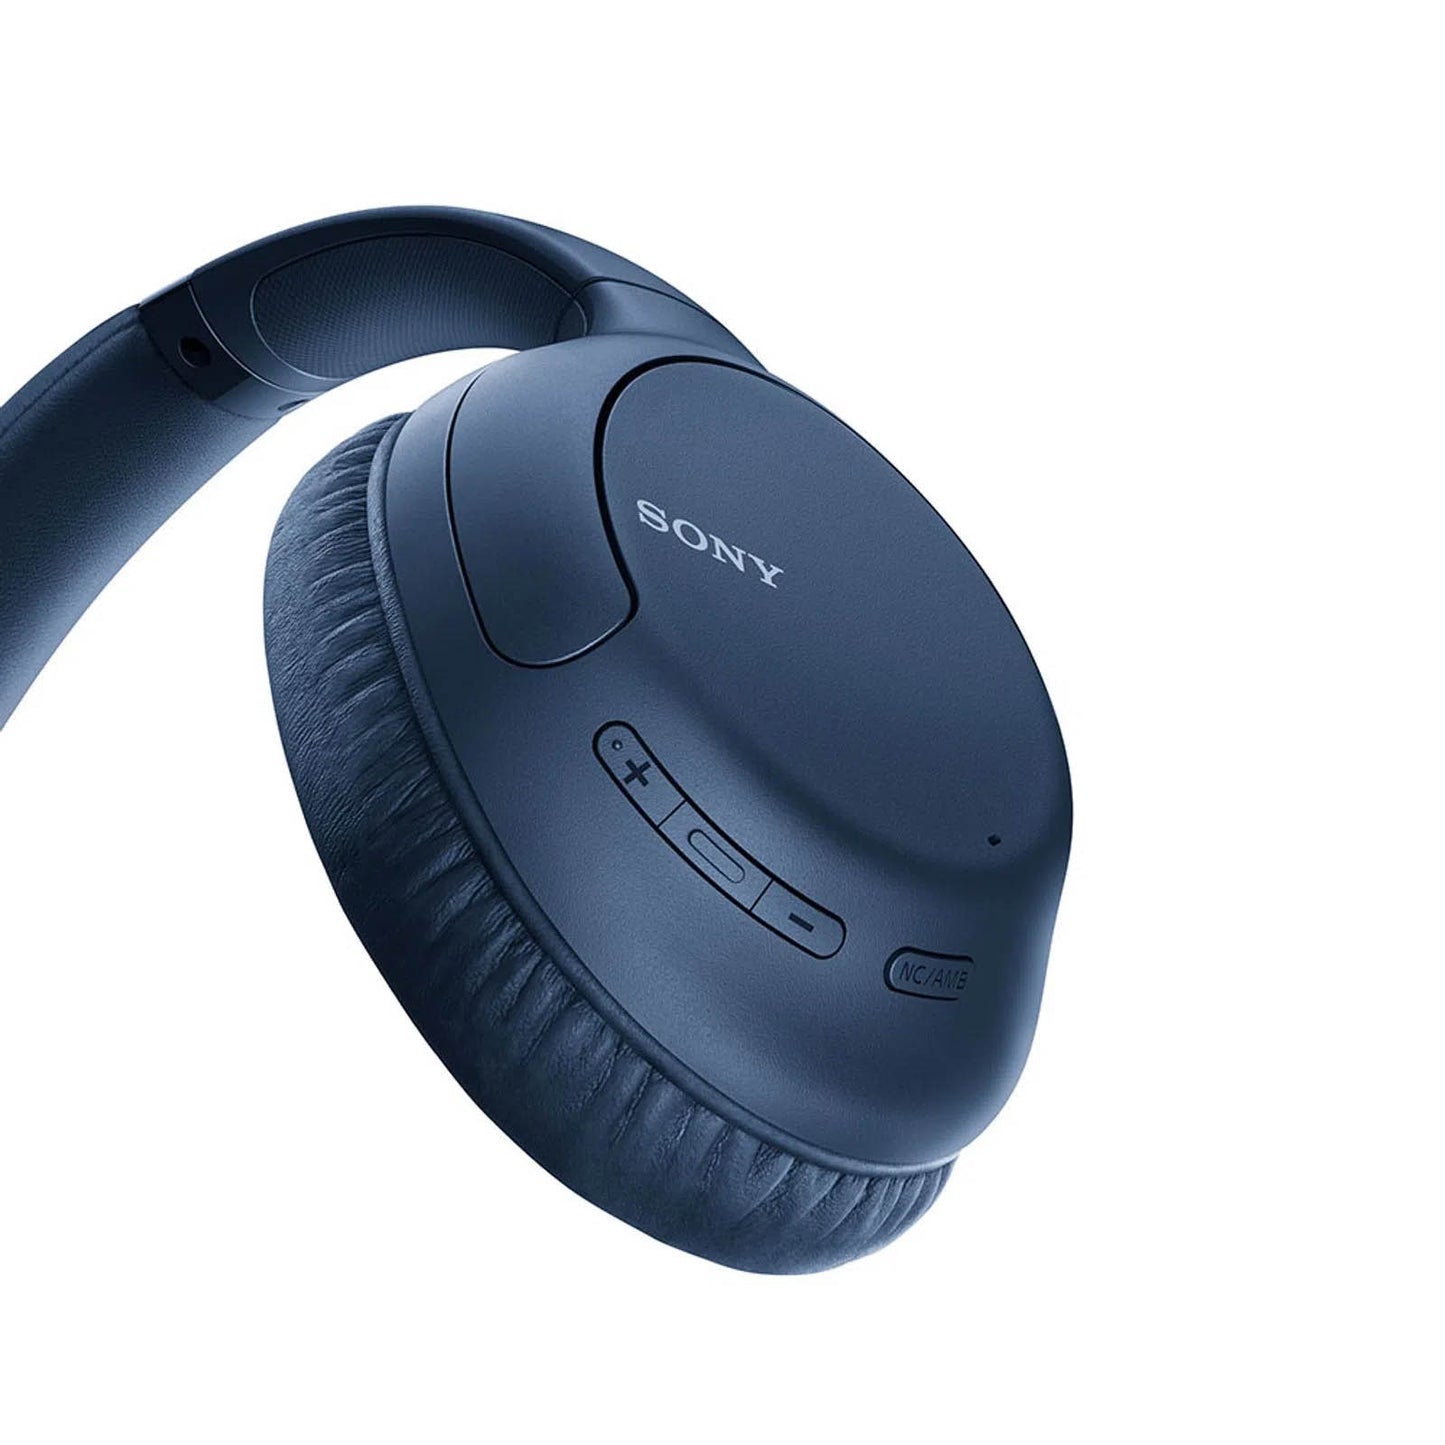 Audífonos Bluetooth de Diadema Sony WH-CH710-AZUL